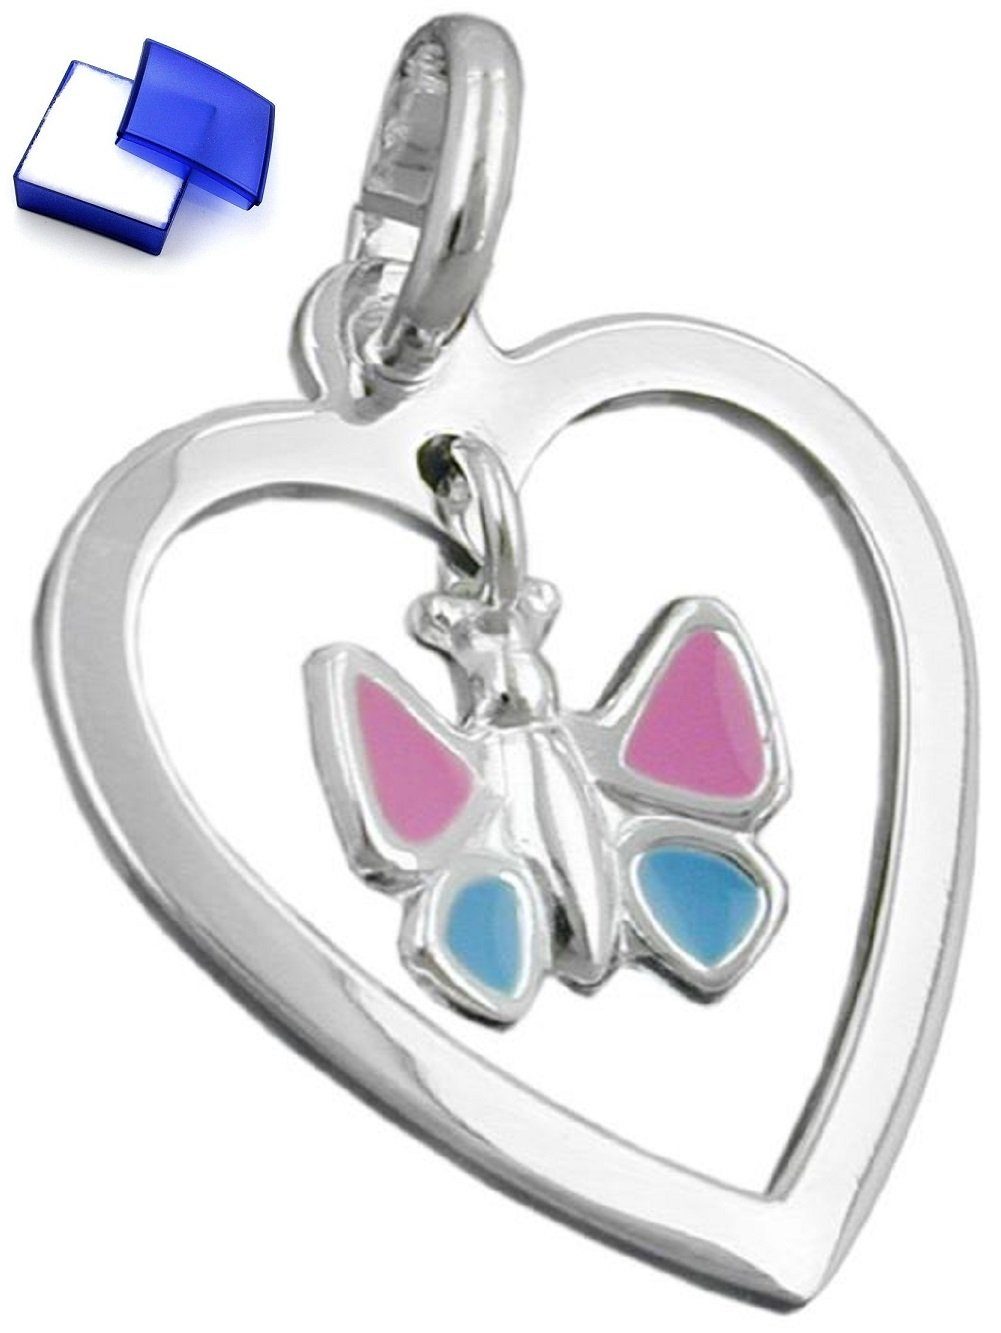 unbespielt Kettenanhänger Anhänger Herz mit Schmetterling farbig lackiert 17 x 15 mm 925 Silber inkl. Schmuckbox, Silberschmuck für Kinder